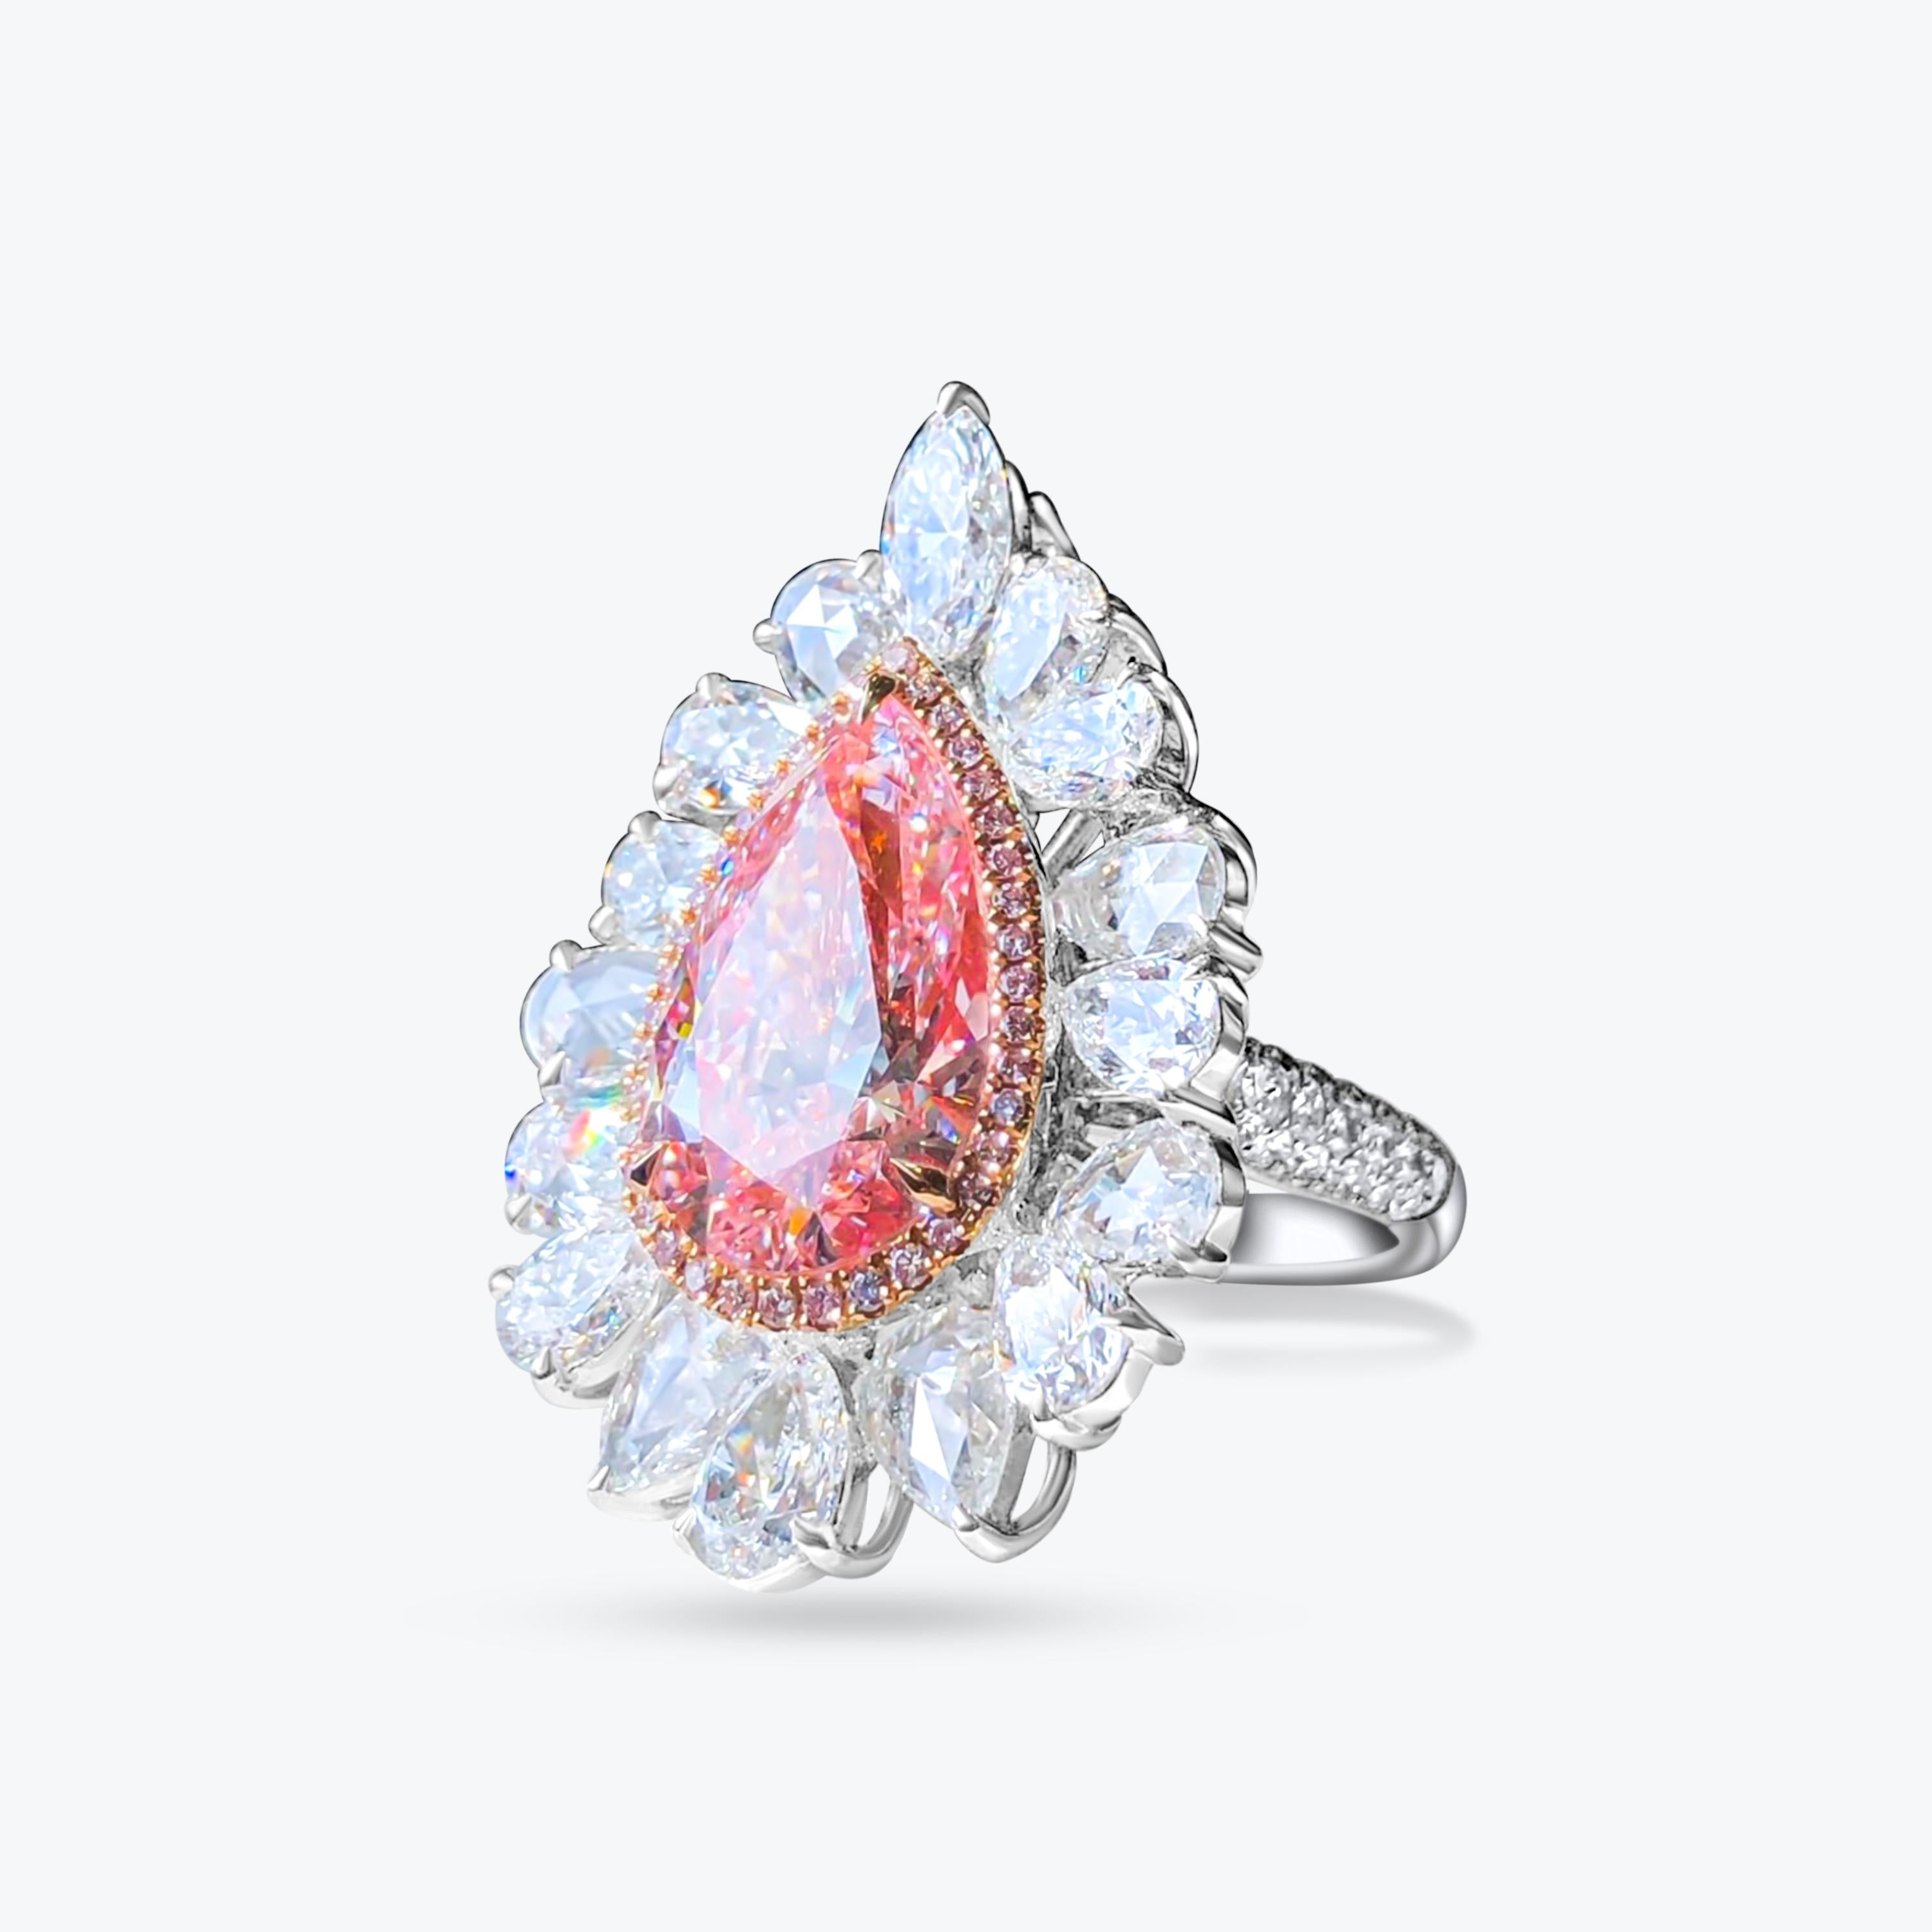 Wir laden Sie ein, diesen seltenen und modernen Halo-Cocktailring mit einem 7,01 Karat GIA-zertifizierten Faint Pink-Diamanten im Birnenschliff zu entdecken, der von 10 herrlichen farblosen Diamanten im Birnenschliff akzentuiert wird, die alle